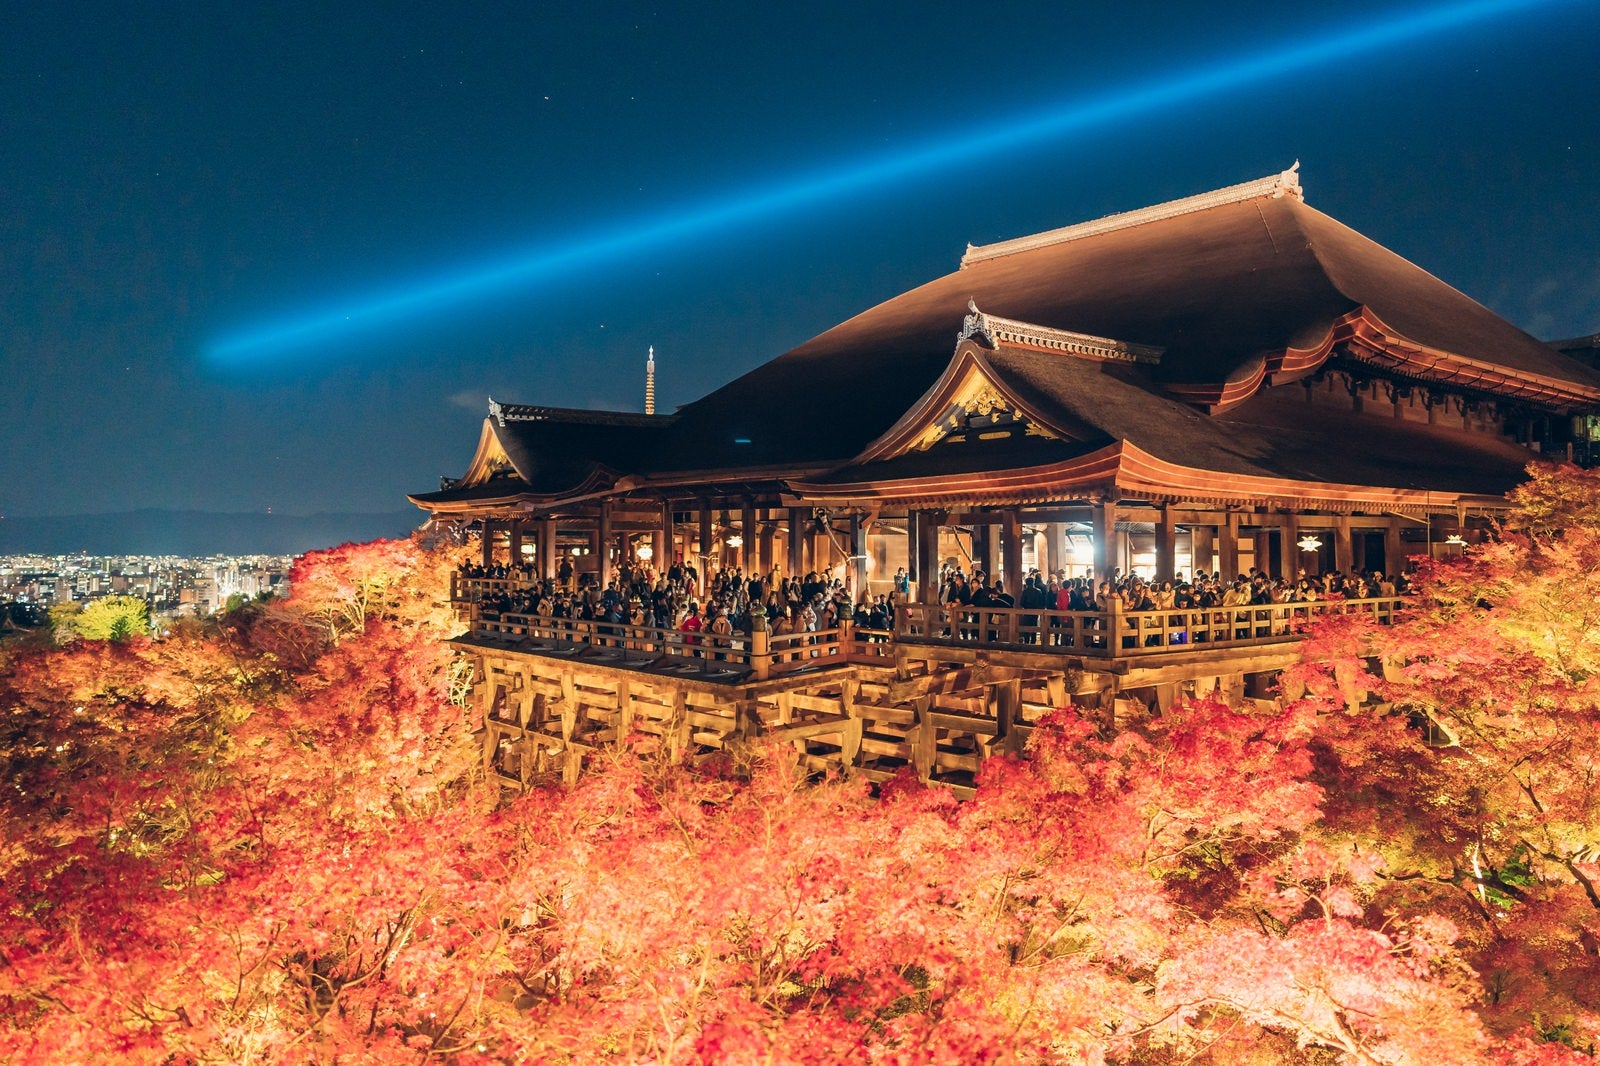 「紅葉に包まれた清水寺のライトアップ」の写真